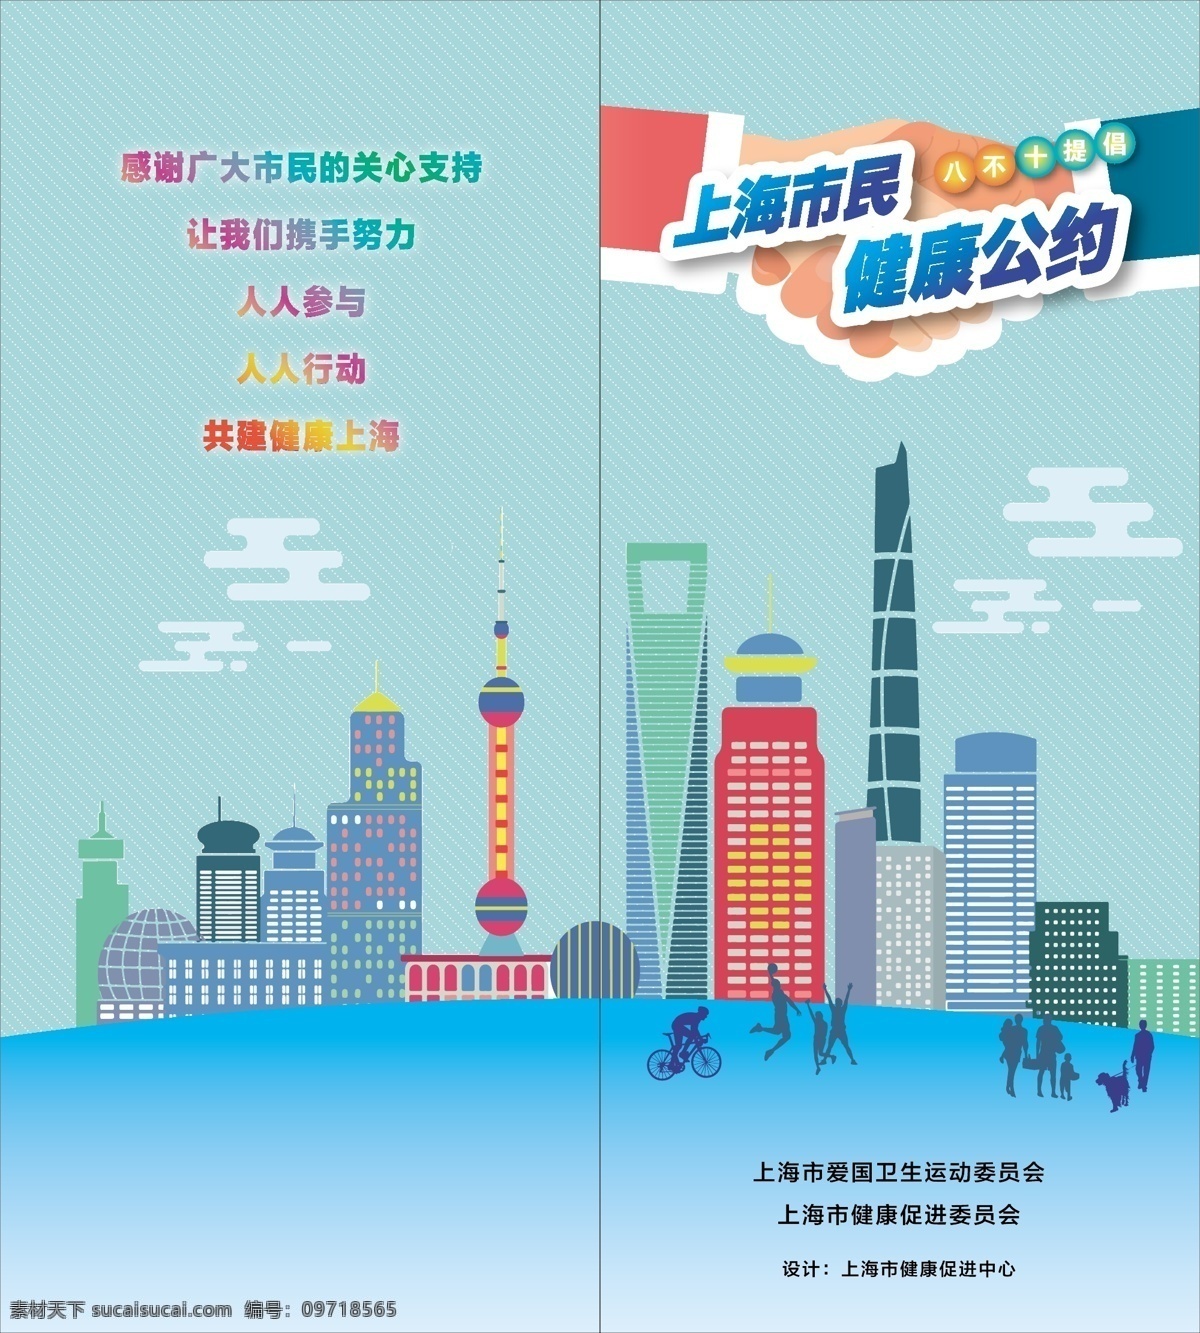 市民健康公约 市民 健康公约 上海市民公约 健康公约封面 健康公约海报 健康公约图片